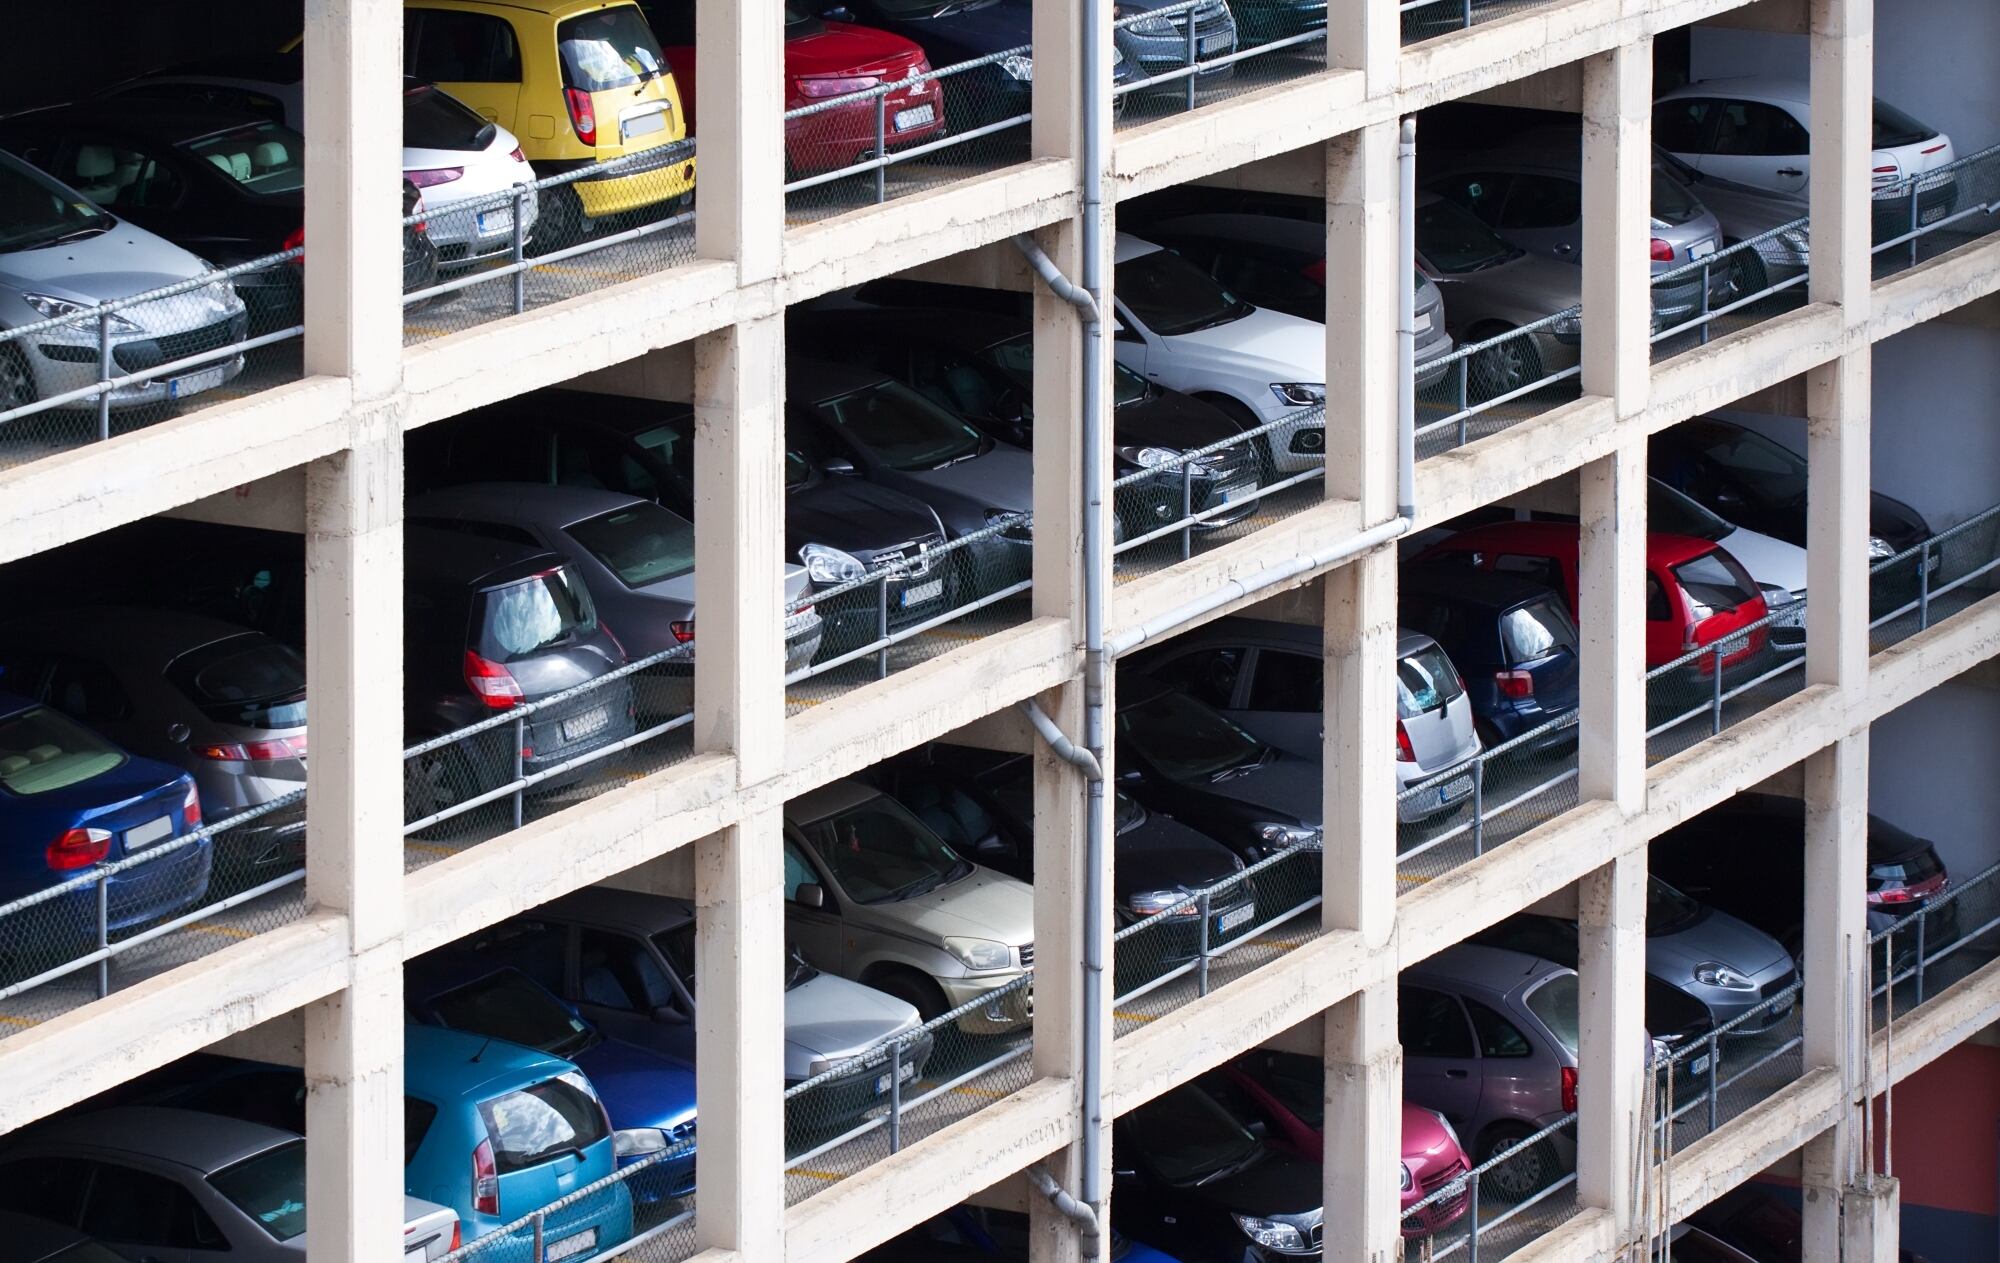 La nueva ley requiere que los propietarios de estacionamientos de propiedad privada muestren de manera destacada sus reglas y tarifas